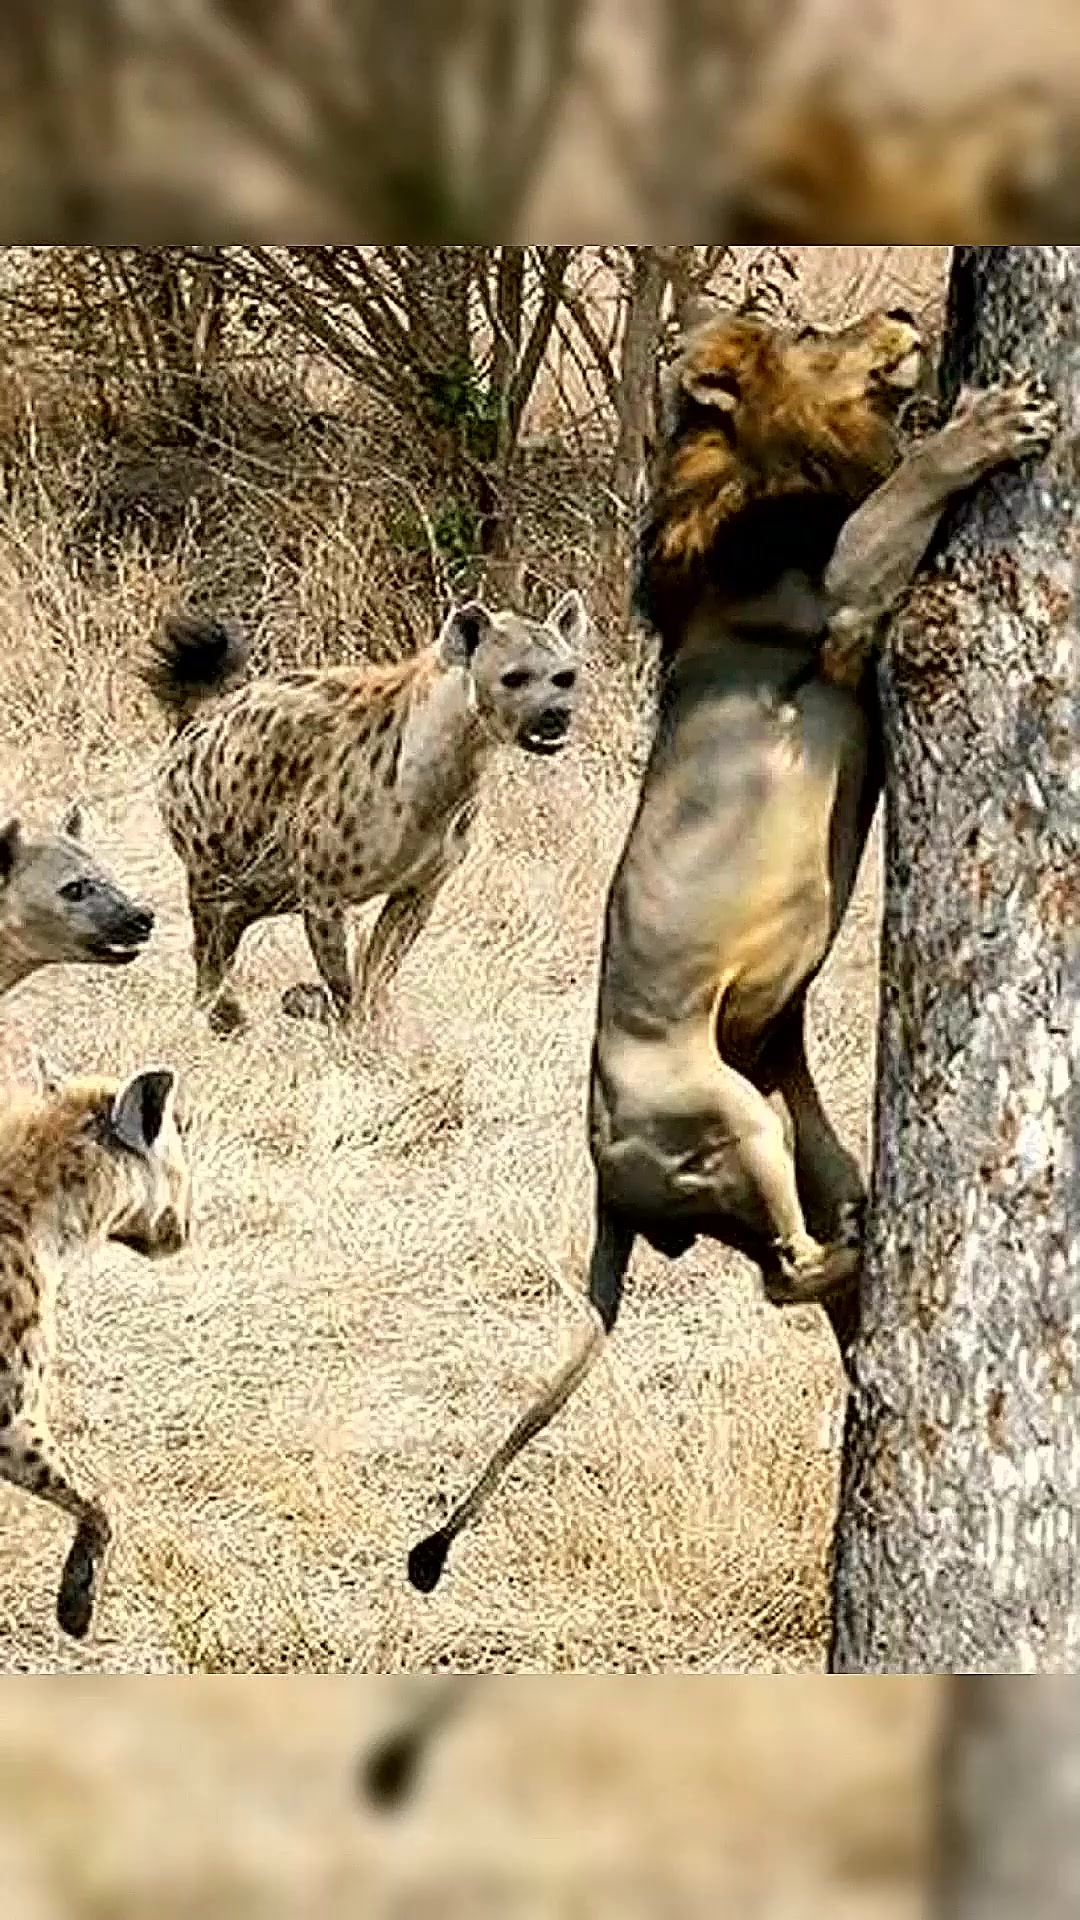 鬣狗对小长颈鹿垂涎三尺,鹿妈妈用大长腿将其吓退